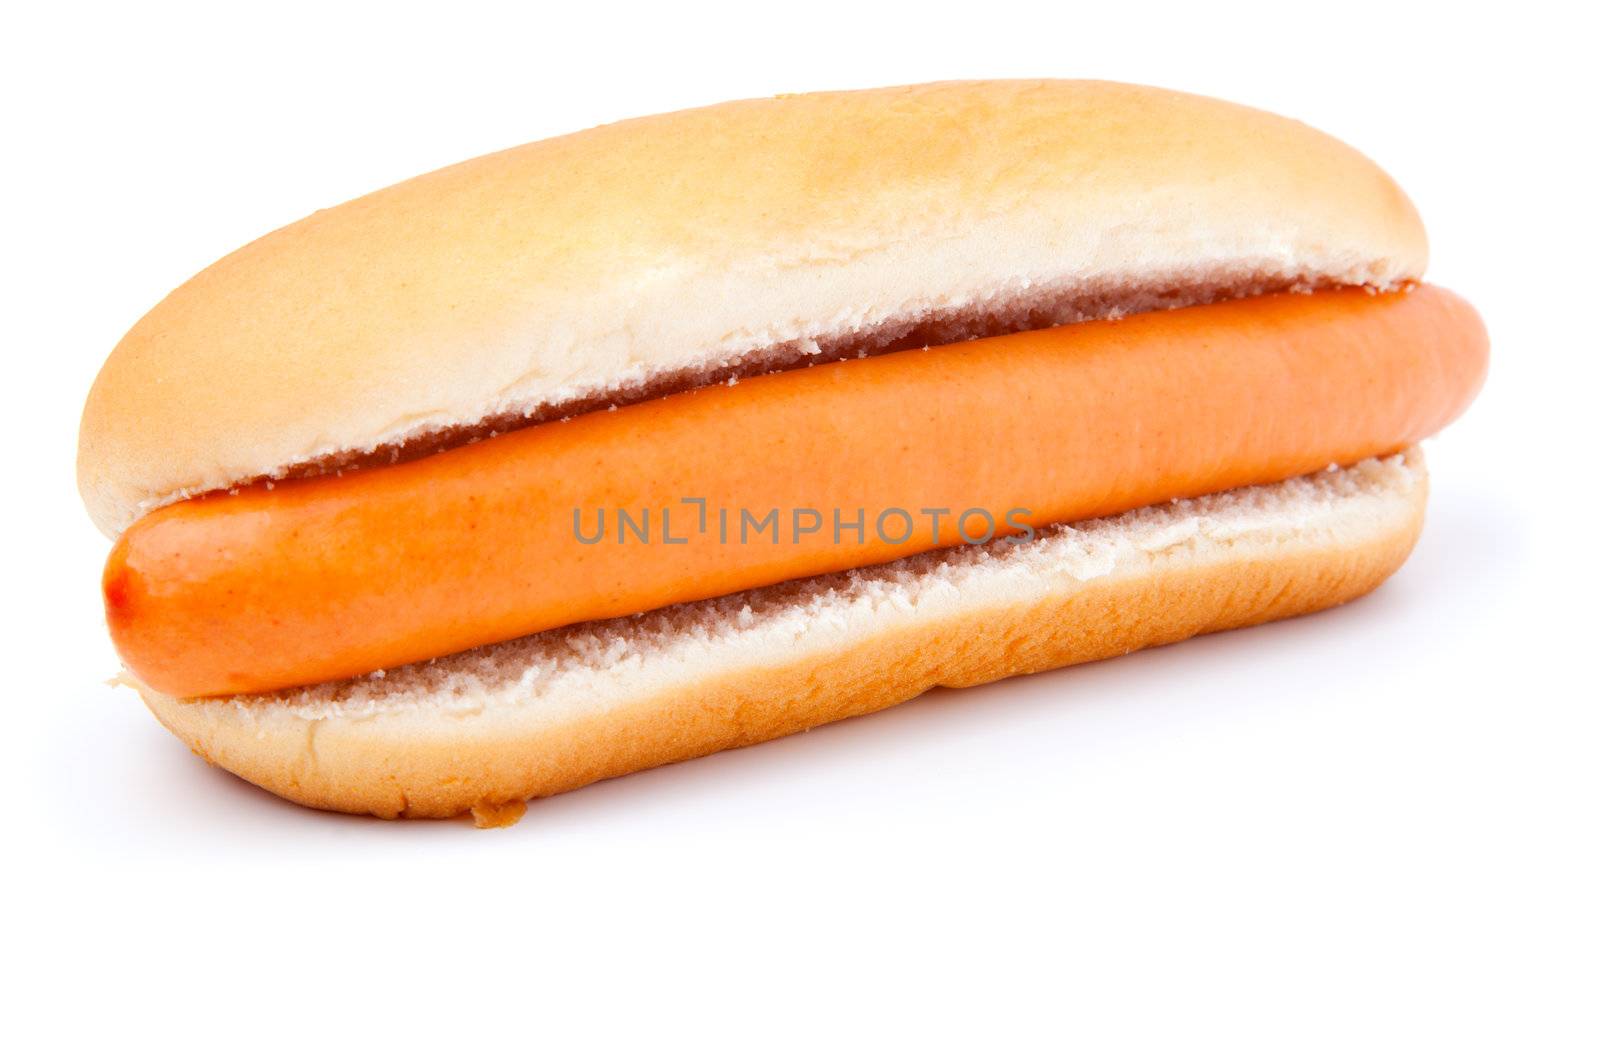 Hot dog on a white background  by motorolka